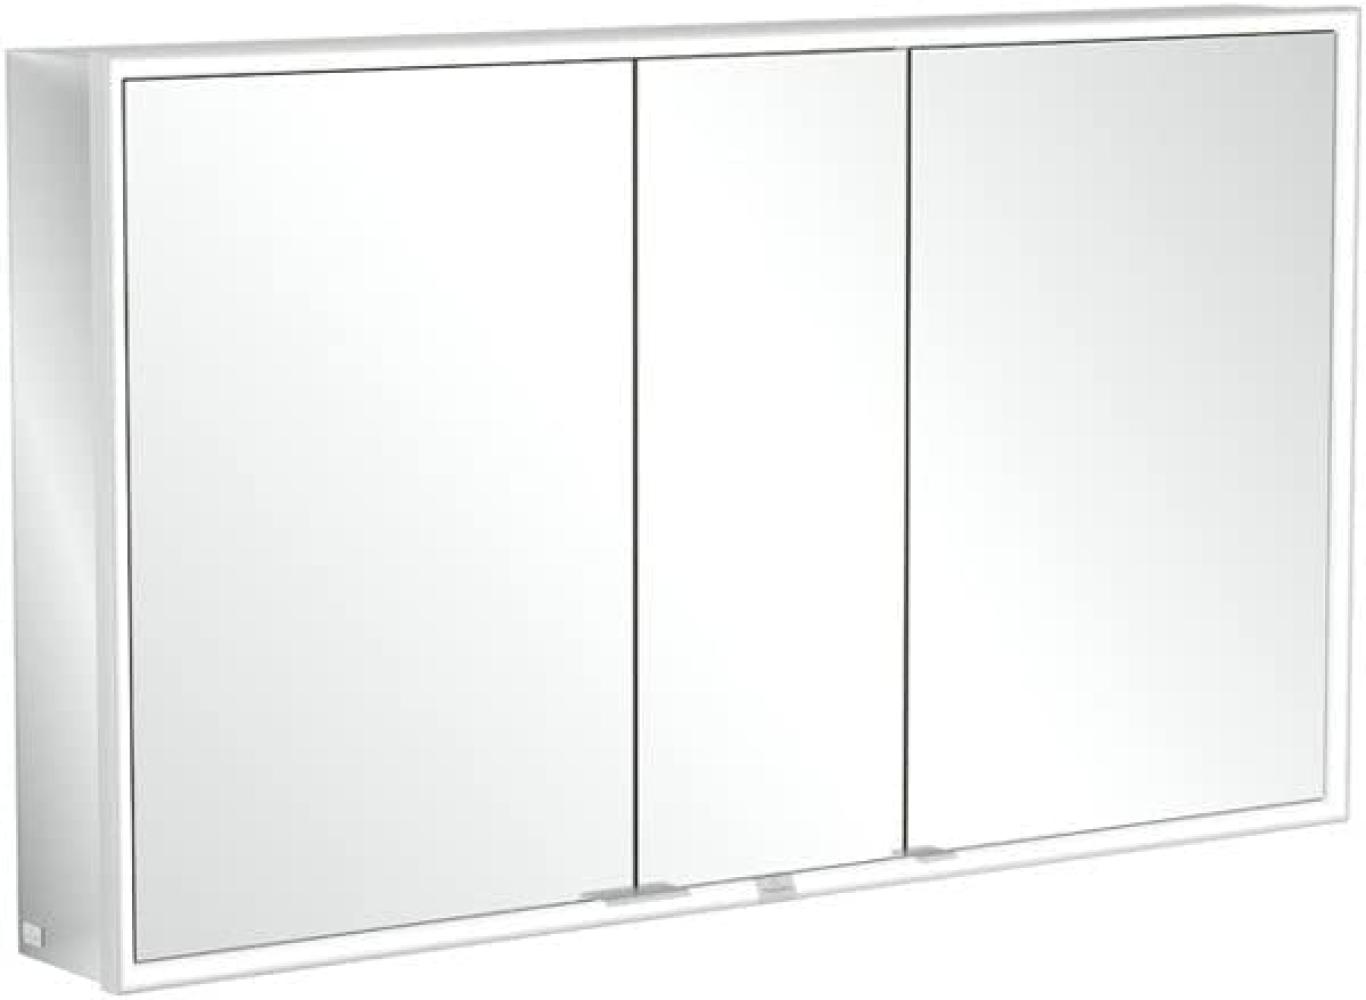 Villeroy & Boch My View Now, Spiegelschrank für Aufputz mit Beleuchtung, 1300x750x168 mm, mit Sensordimmer, 3 Türen, A45513 - A4551300 Bild 1